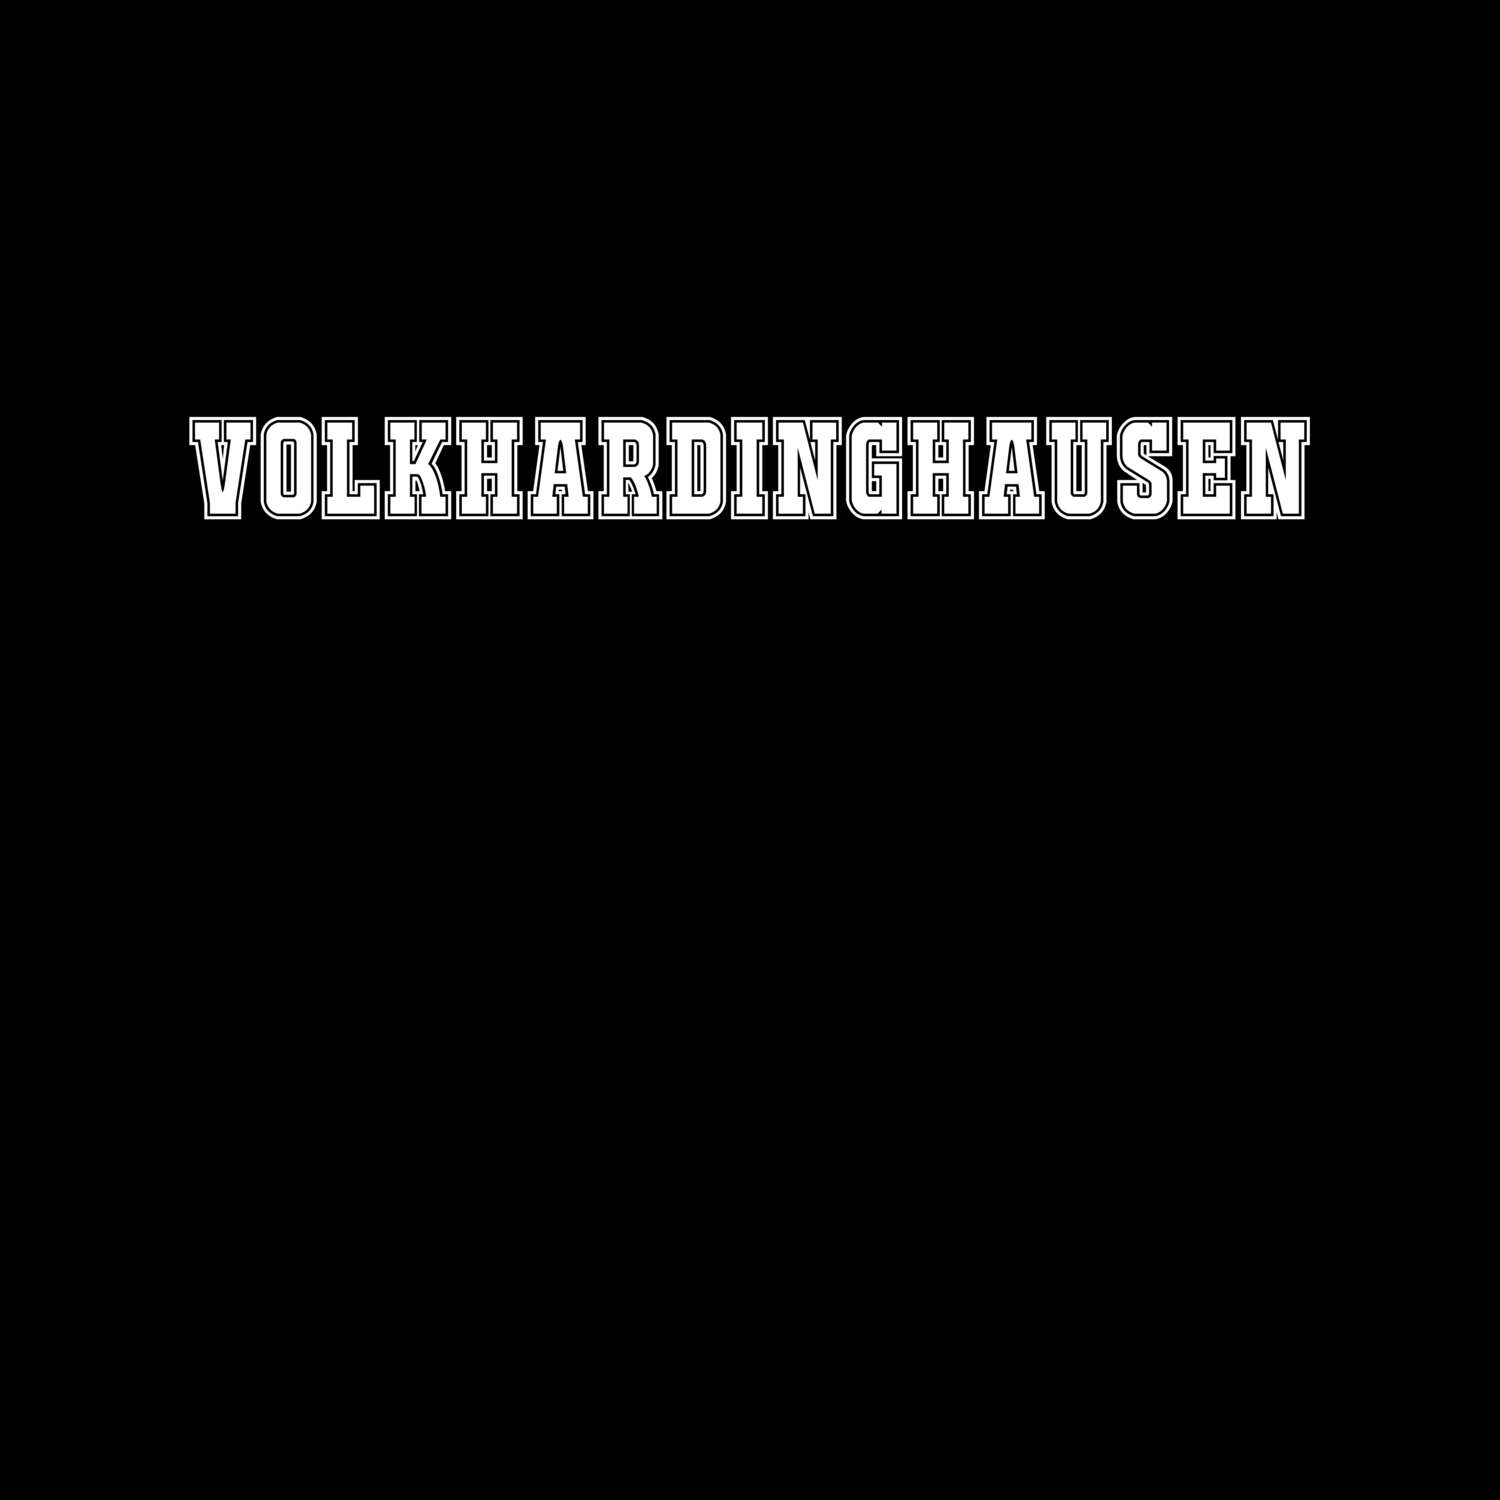 Volkhardinghausen T-Shirt »Classic«